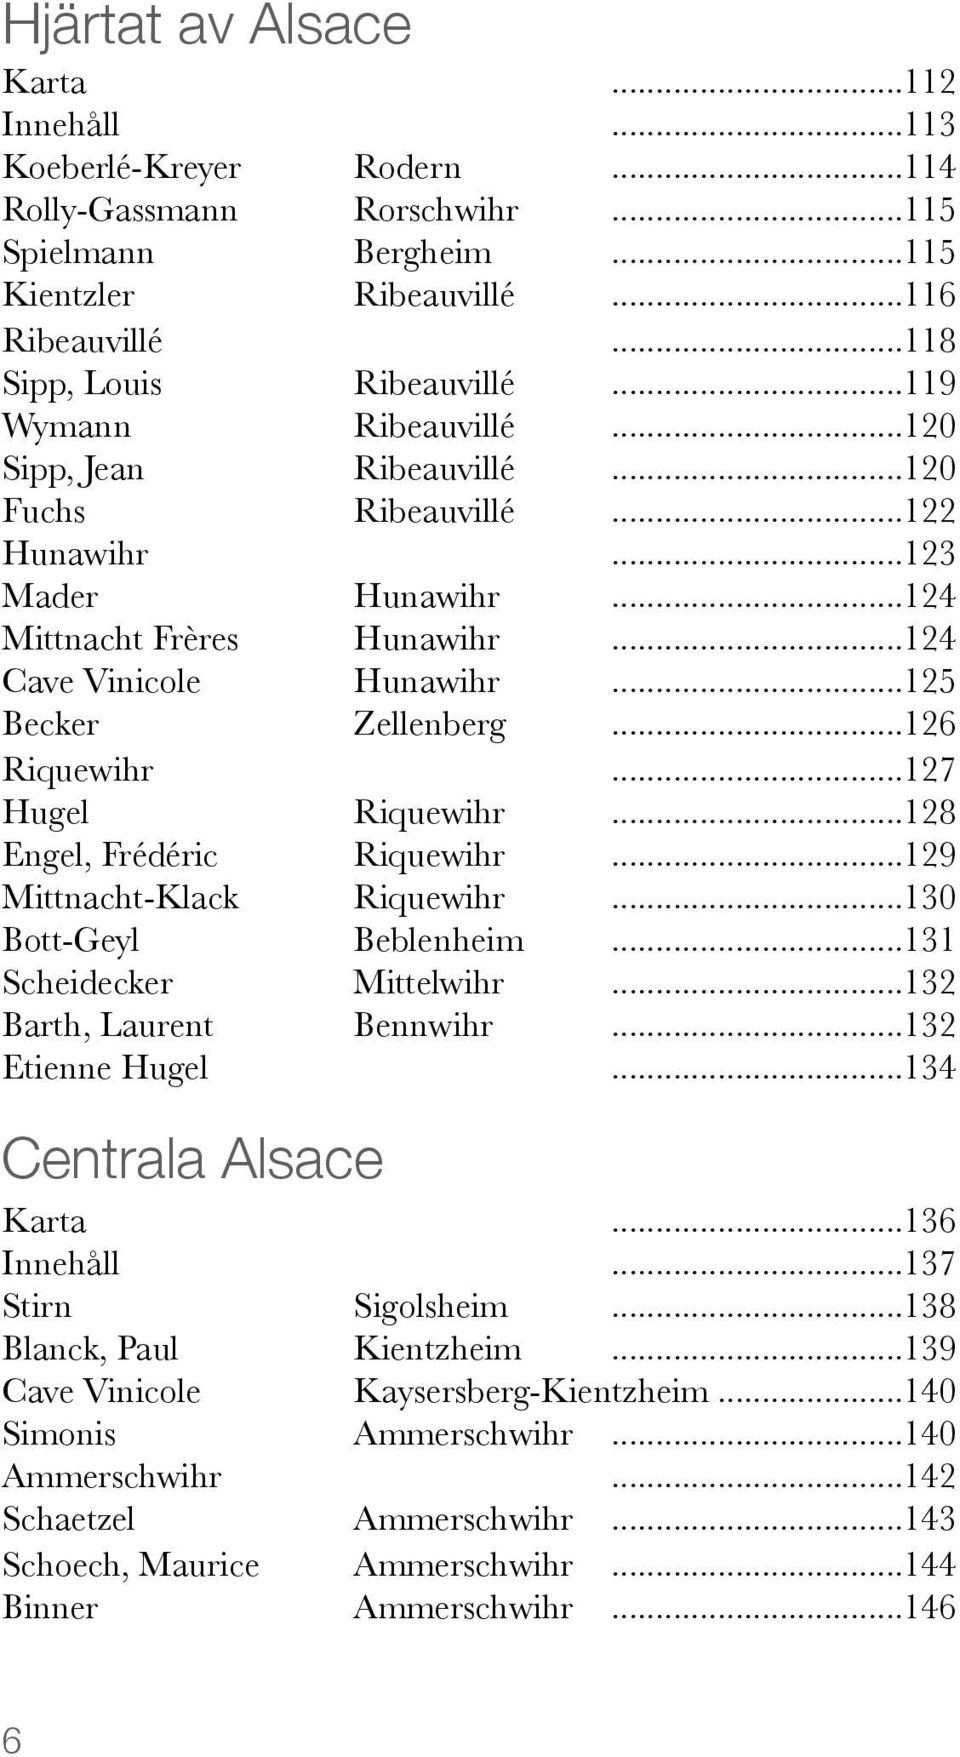 .. 125 Becker Zellenberg... 126 Riquewihr... 127 Hugel Riquewihr... 128 Engel, Frédéric Riquewihr... 129 Mittnacht-Klack Riquewihr... 130 Bott-Geyl Beblenheim... 131 Scheidecker Mittelwihr.